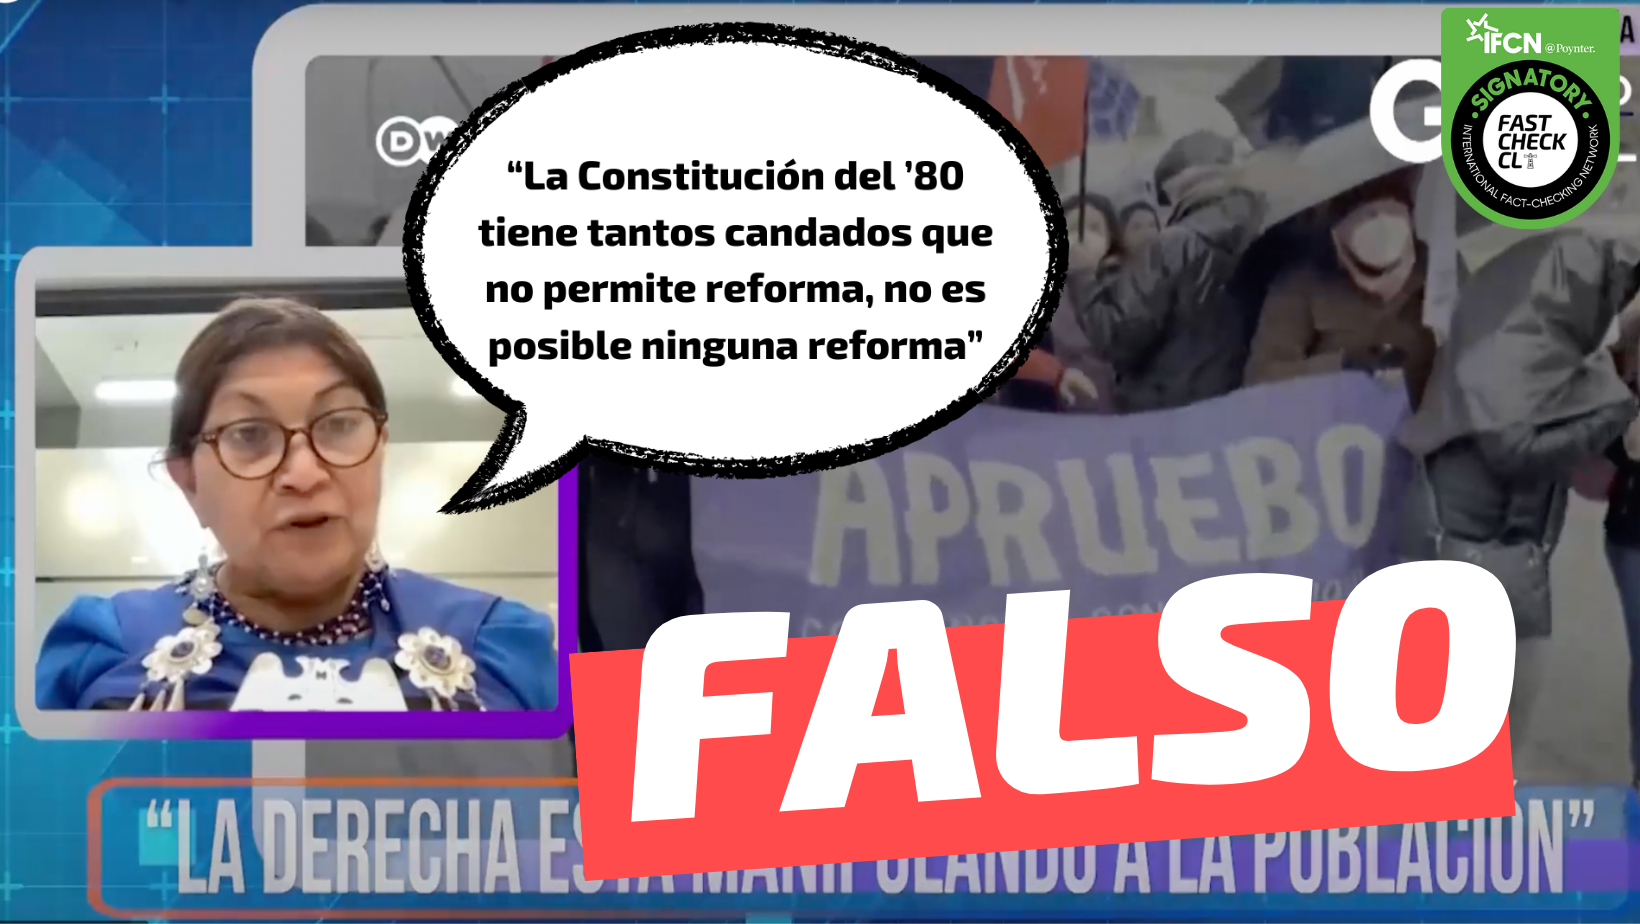 You are currently viewing “La Constituci贸n del ’80 tiene tantos candados que no permite reforma, no es posible ninguna reforma”: #Falso